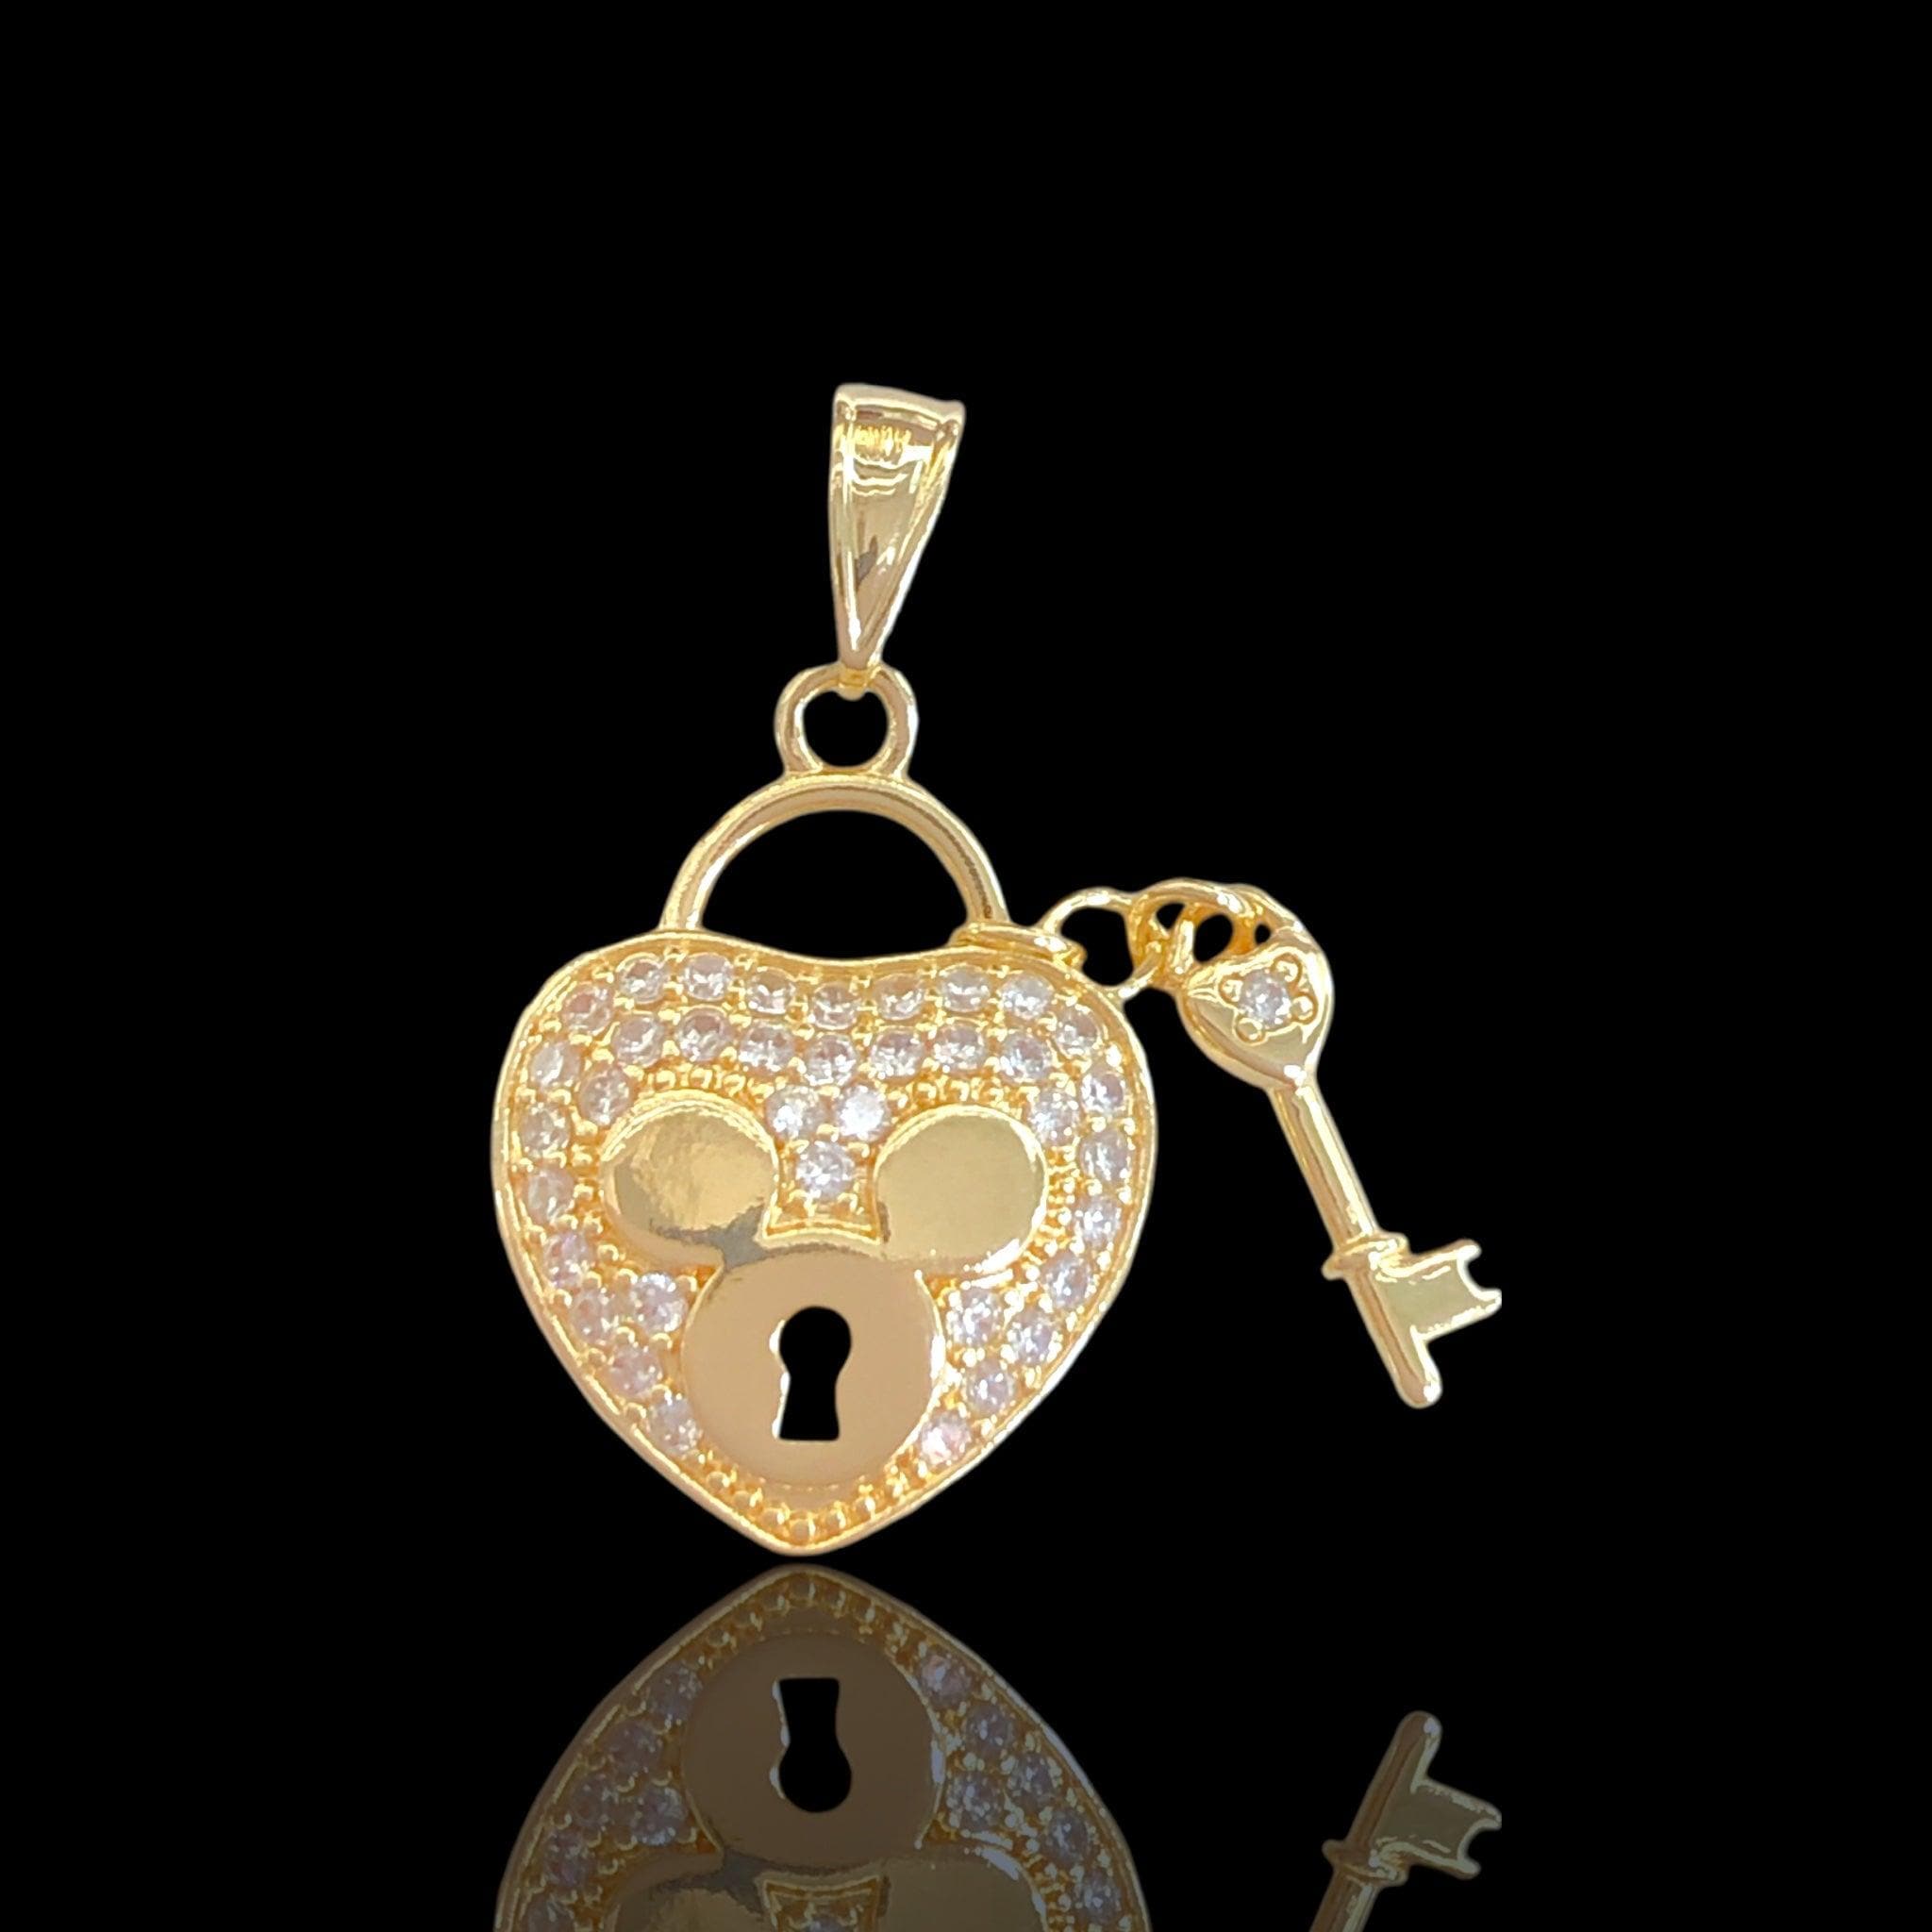 OLP 0500 18K Gold Filled Teddy Bear Heart Locket Pendant- kuania oro laminado